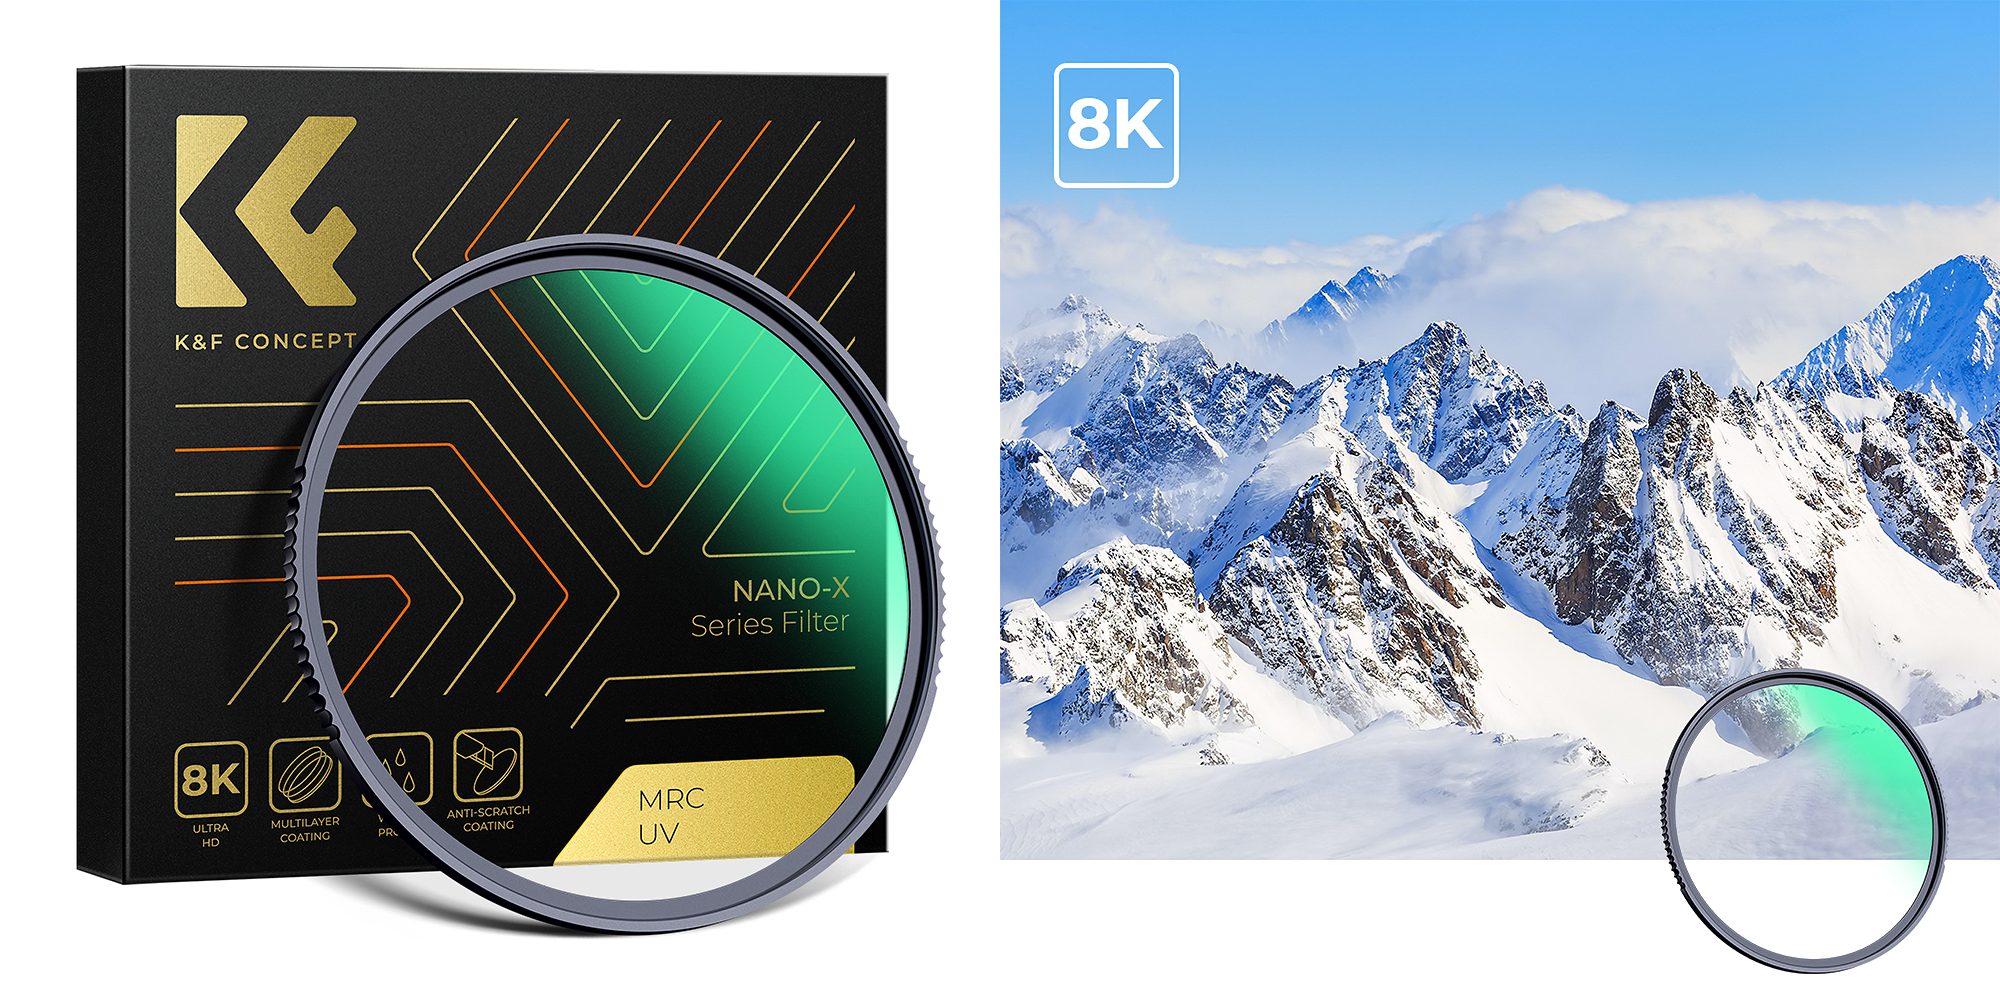 Filtr UV K&F Concept Nano-X MRC UV - Poprawa jakości zdjęć